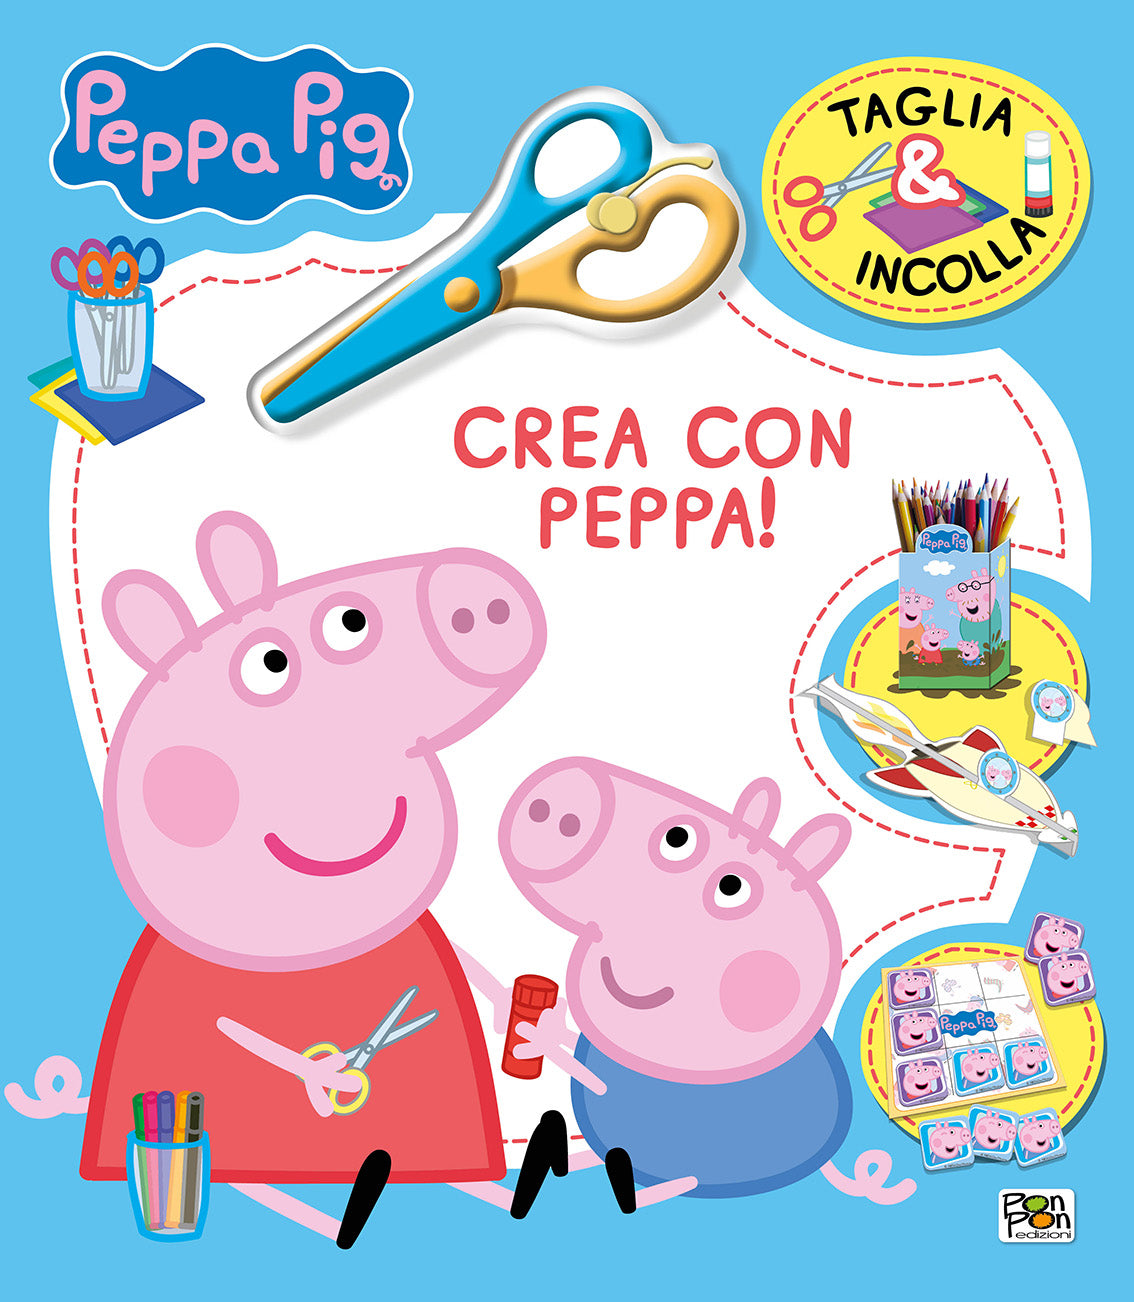 Peppa Pig. Taglia & Incolla. Crea con Peppa